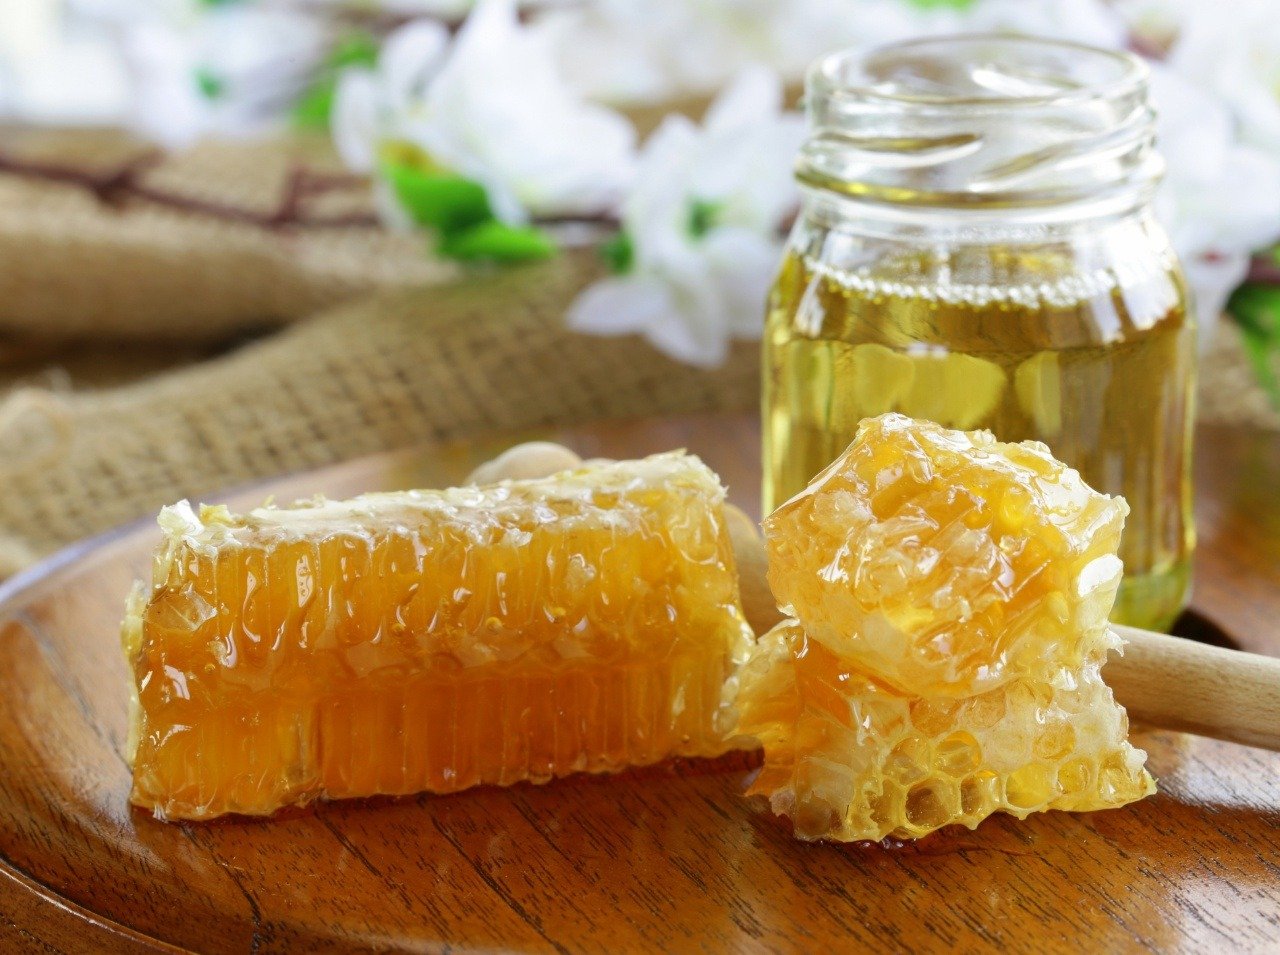 Med je liečivý, v kombinácii s vodou dokáže aj nemožné!